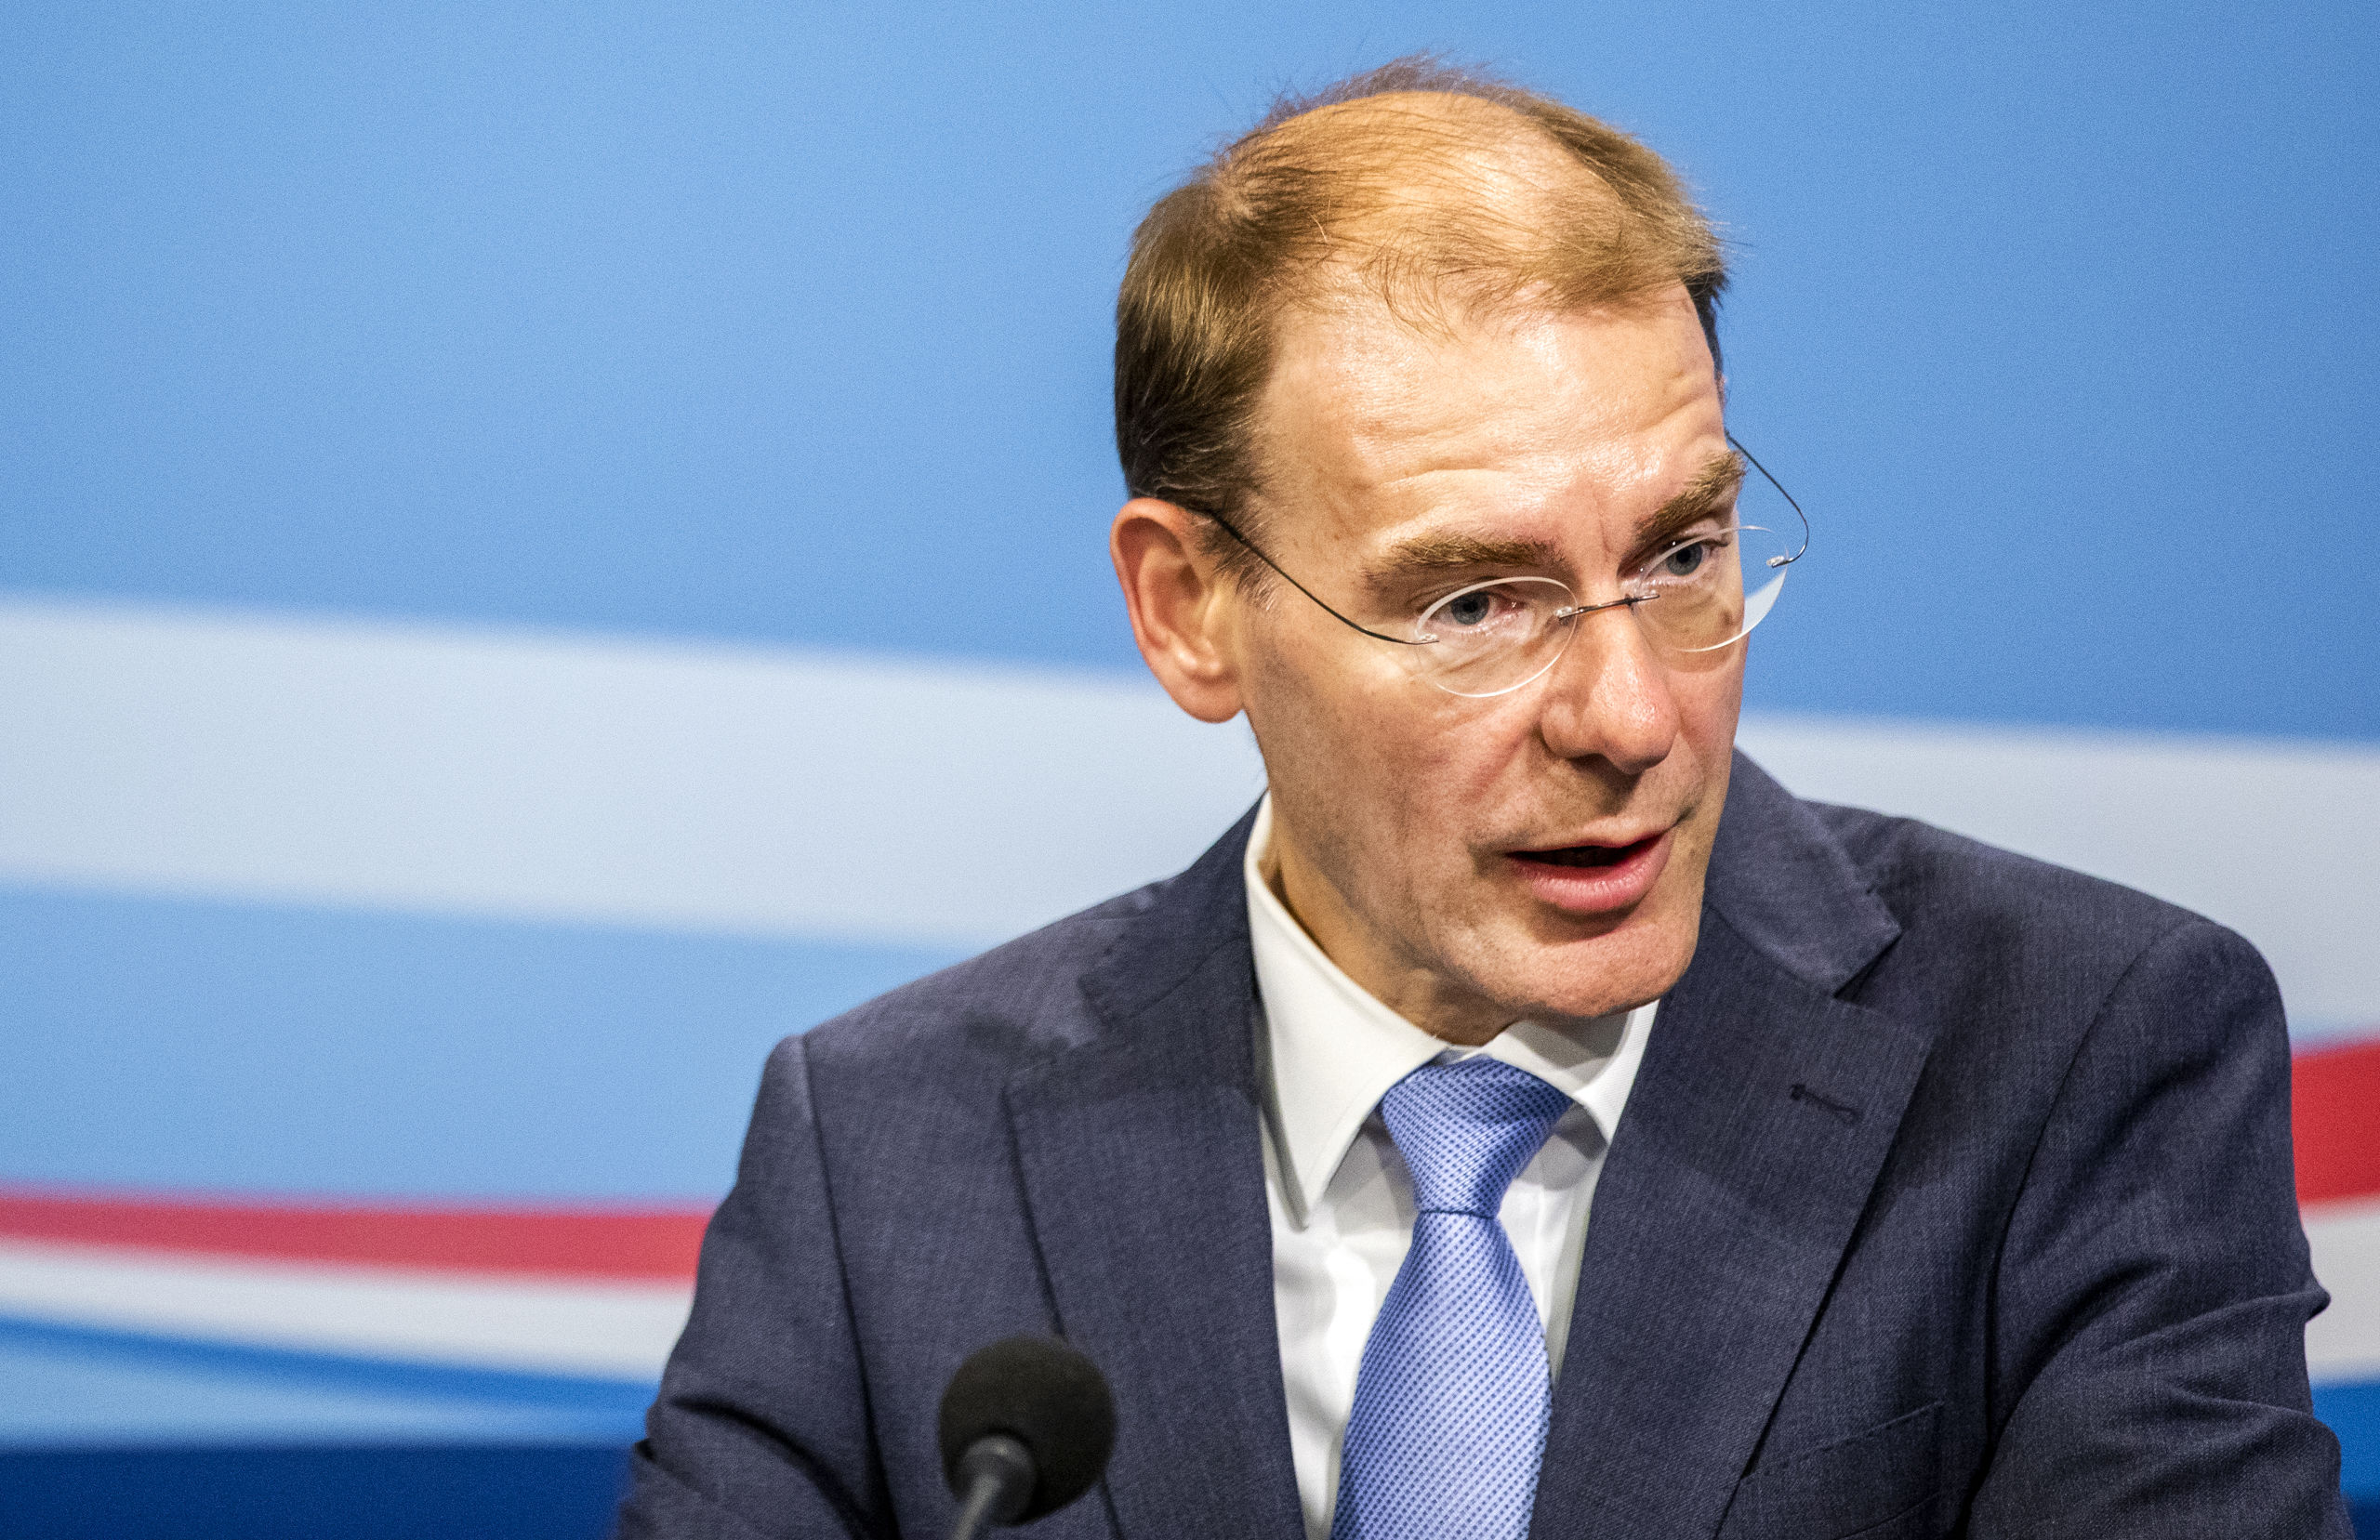 Staatssecretaris Menno Snel (Financiën) kondigt een nieuw belastingplan aan voor Nederlandse spaarders. Over spaartegoeden tot zo'n 400.000 euro hoeft straks geen belasting meer te worden betaald. 